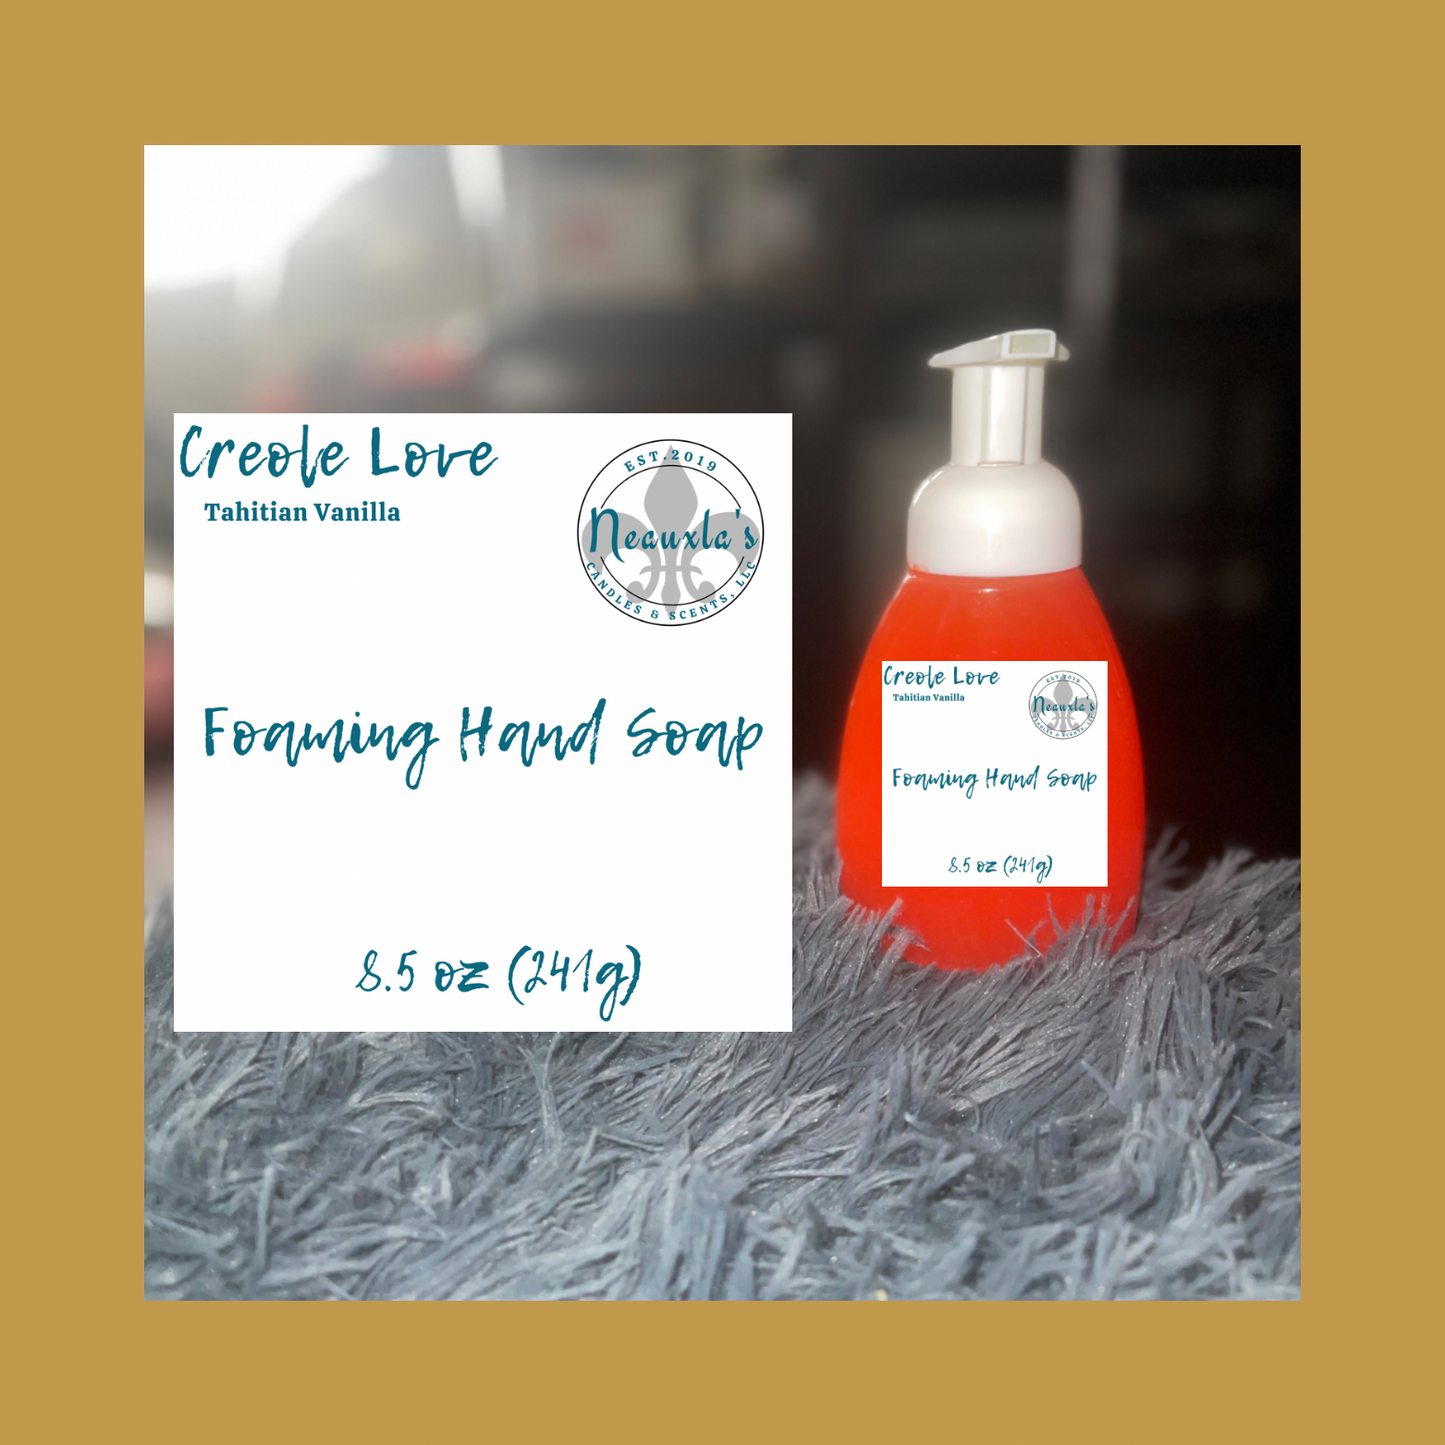 Neauxla’s Foaming Hand Soap